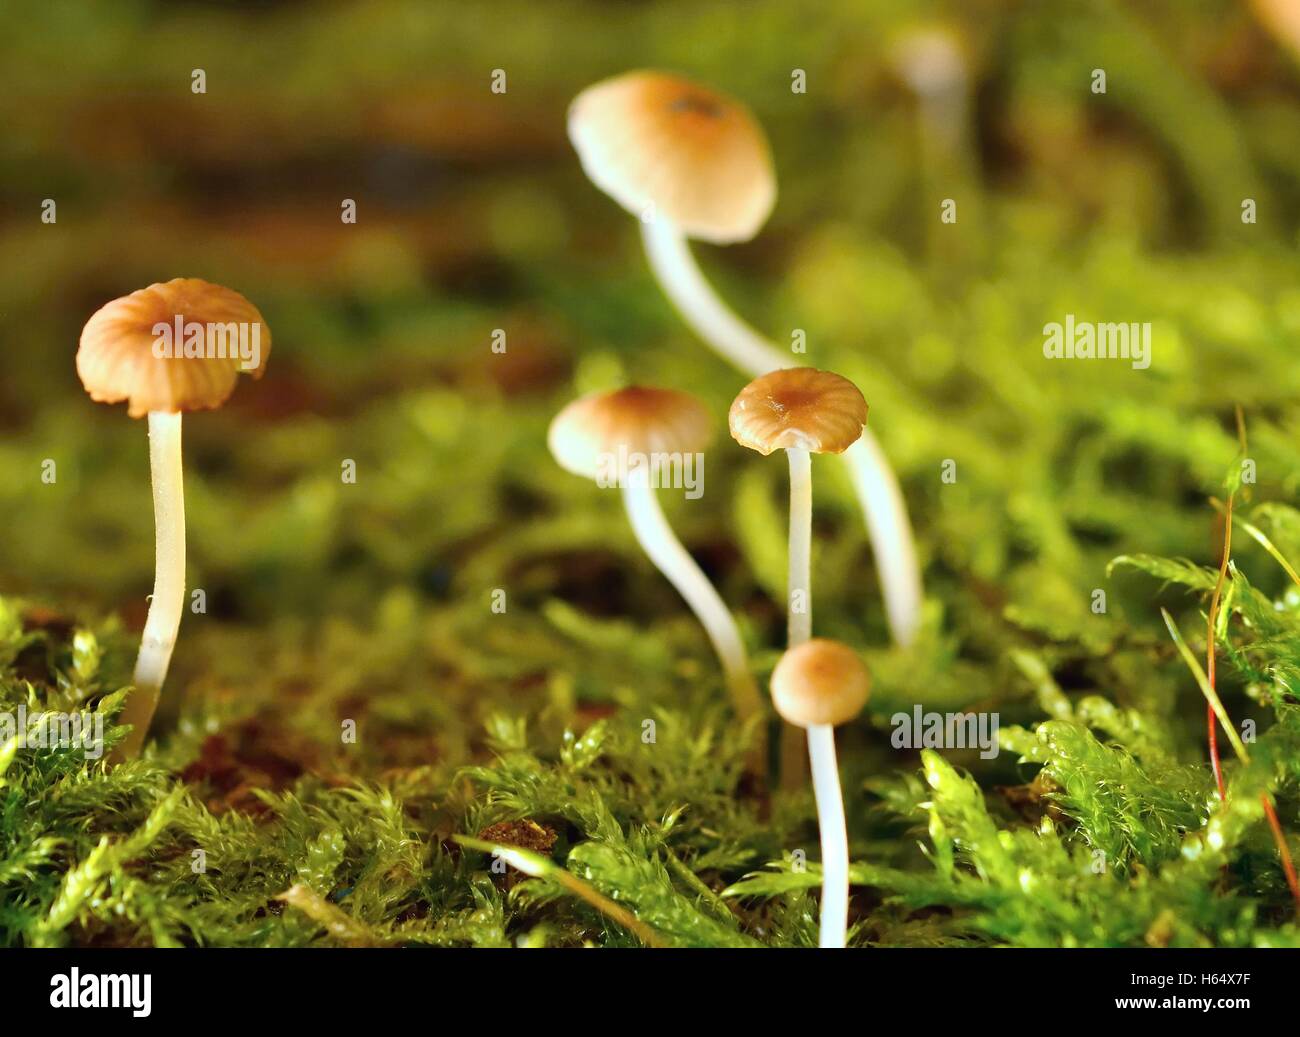 Plan Macro sur les petits champignons miniature en mousse. Banque D'Images